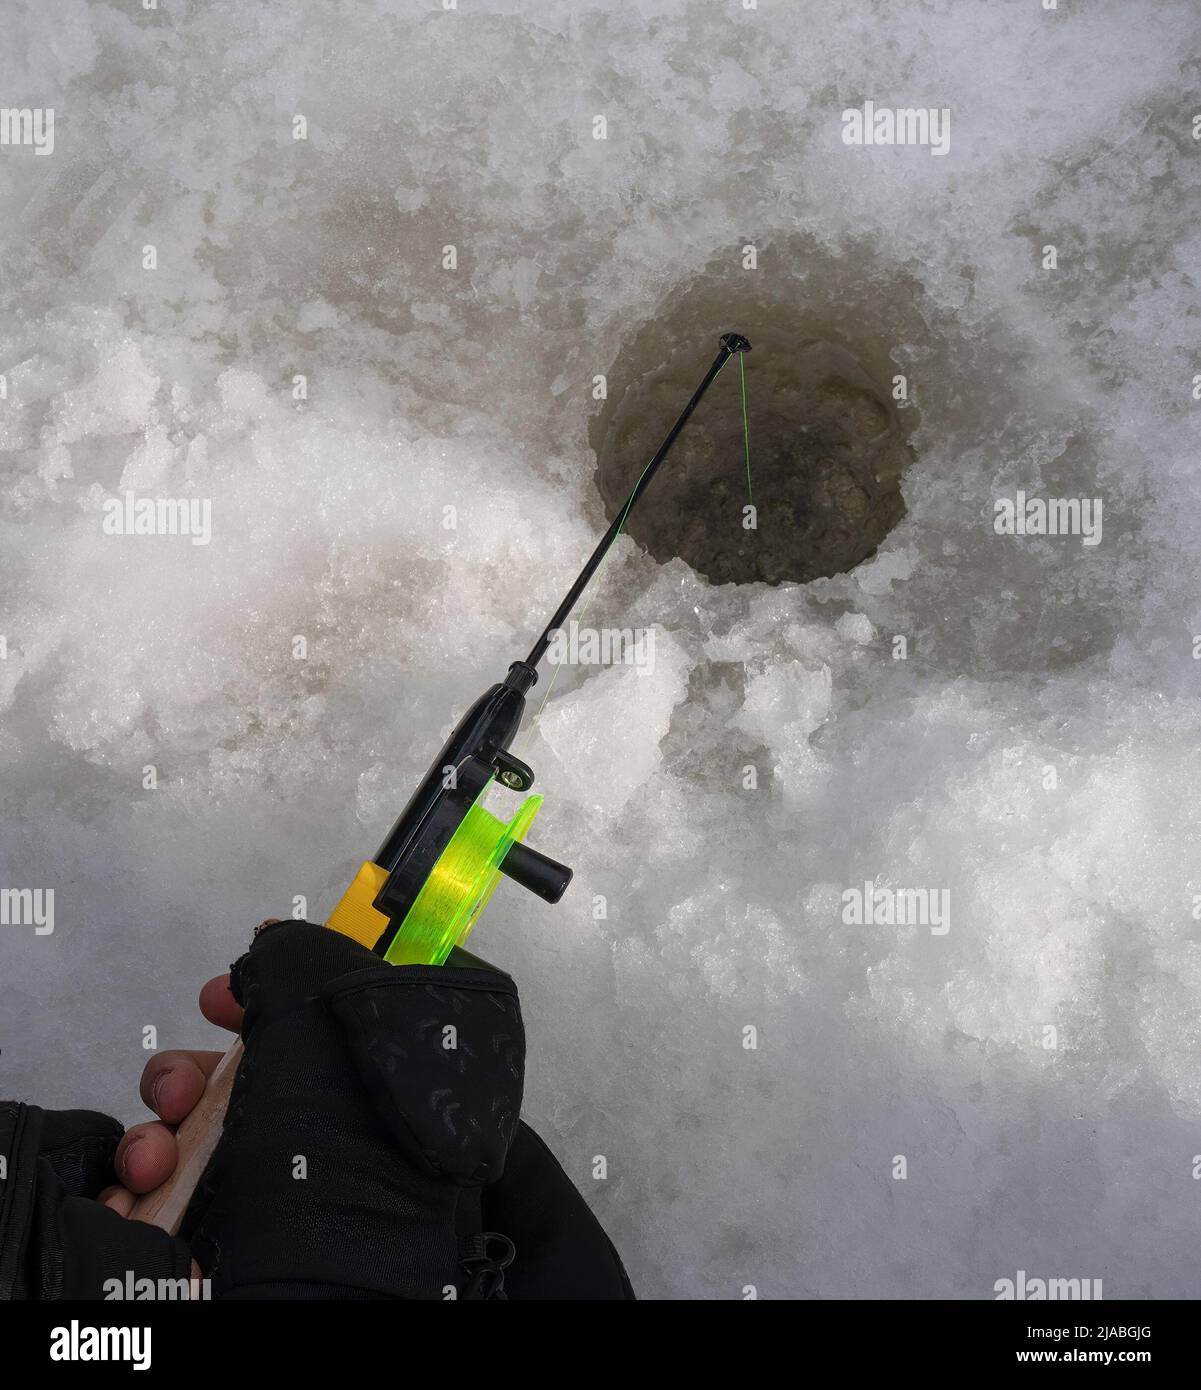 Mani con guanti che tengono una canna da pesca sopra un foro nel ghiaccio che copre un fiume congelato. Foto Stock